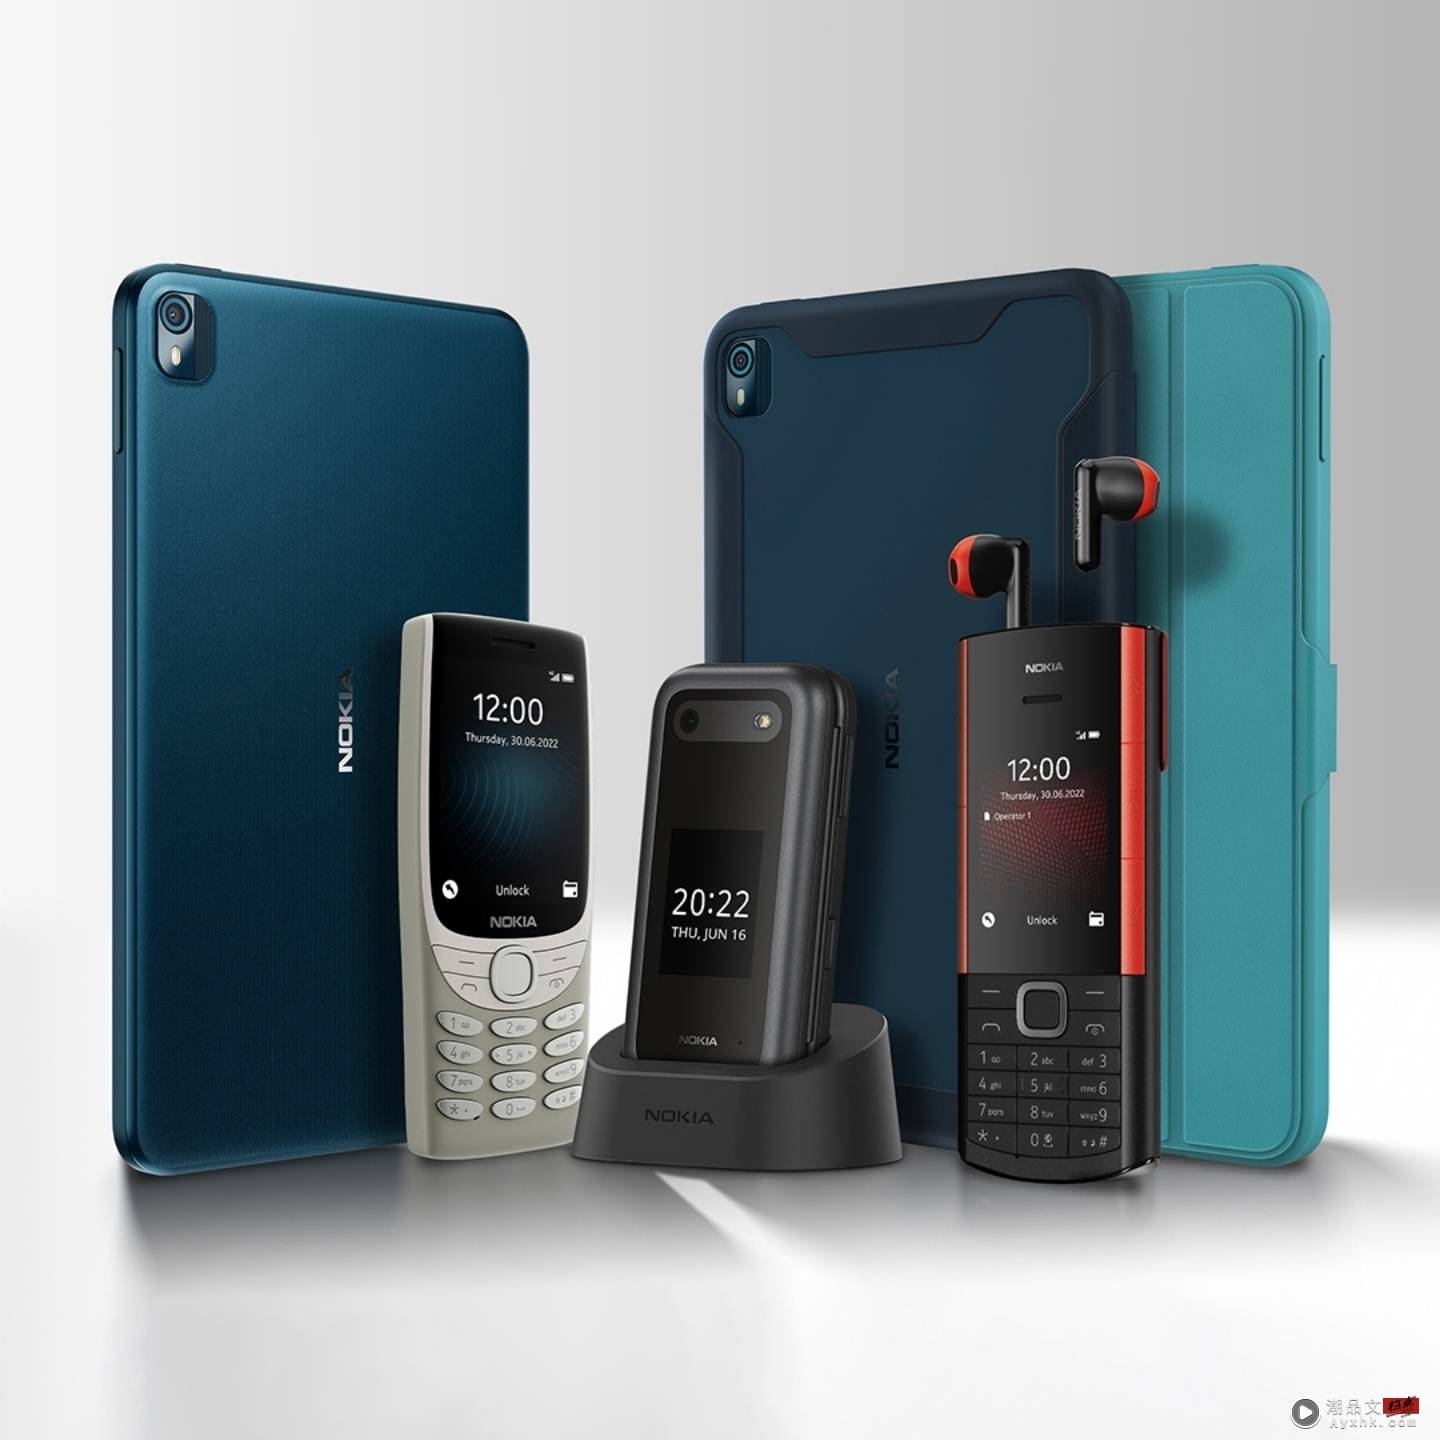 HMD 推出三款 Nokia 复刻版手机！外观超经典的 Nokia 8210 4G 和可收纳耳机的 Nokia 5710 XpressAudio 都来了 数码科技 图1张